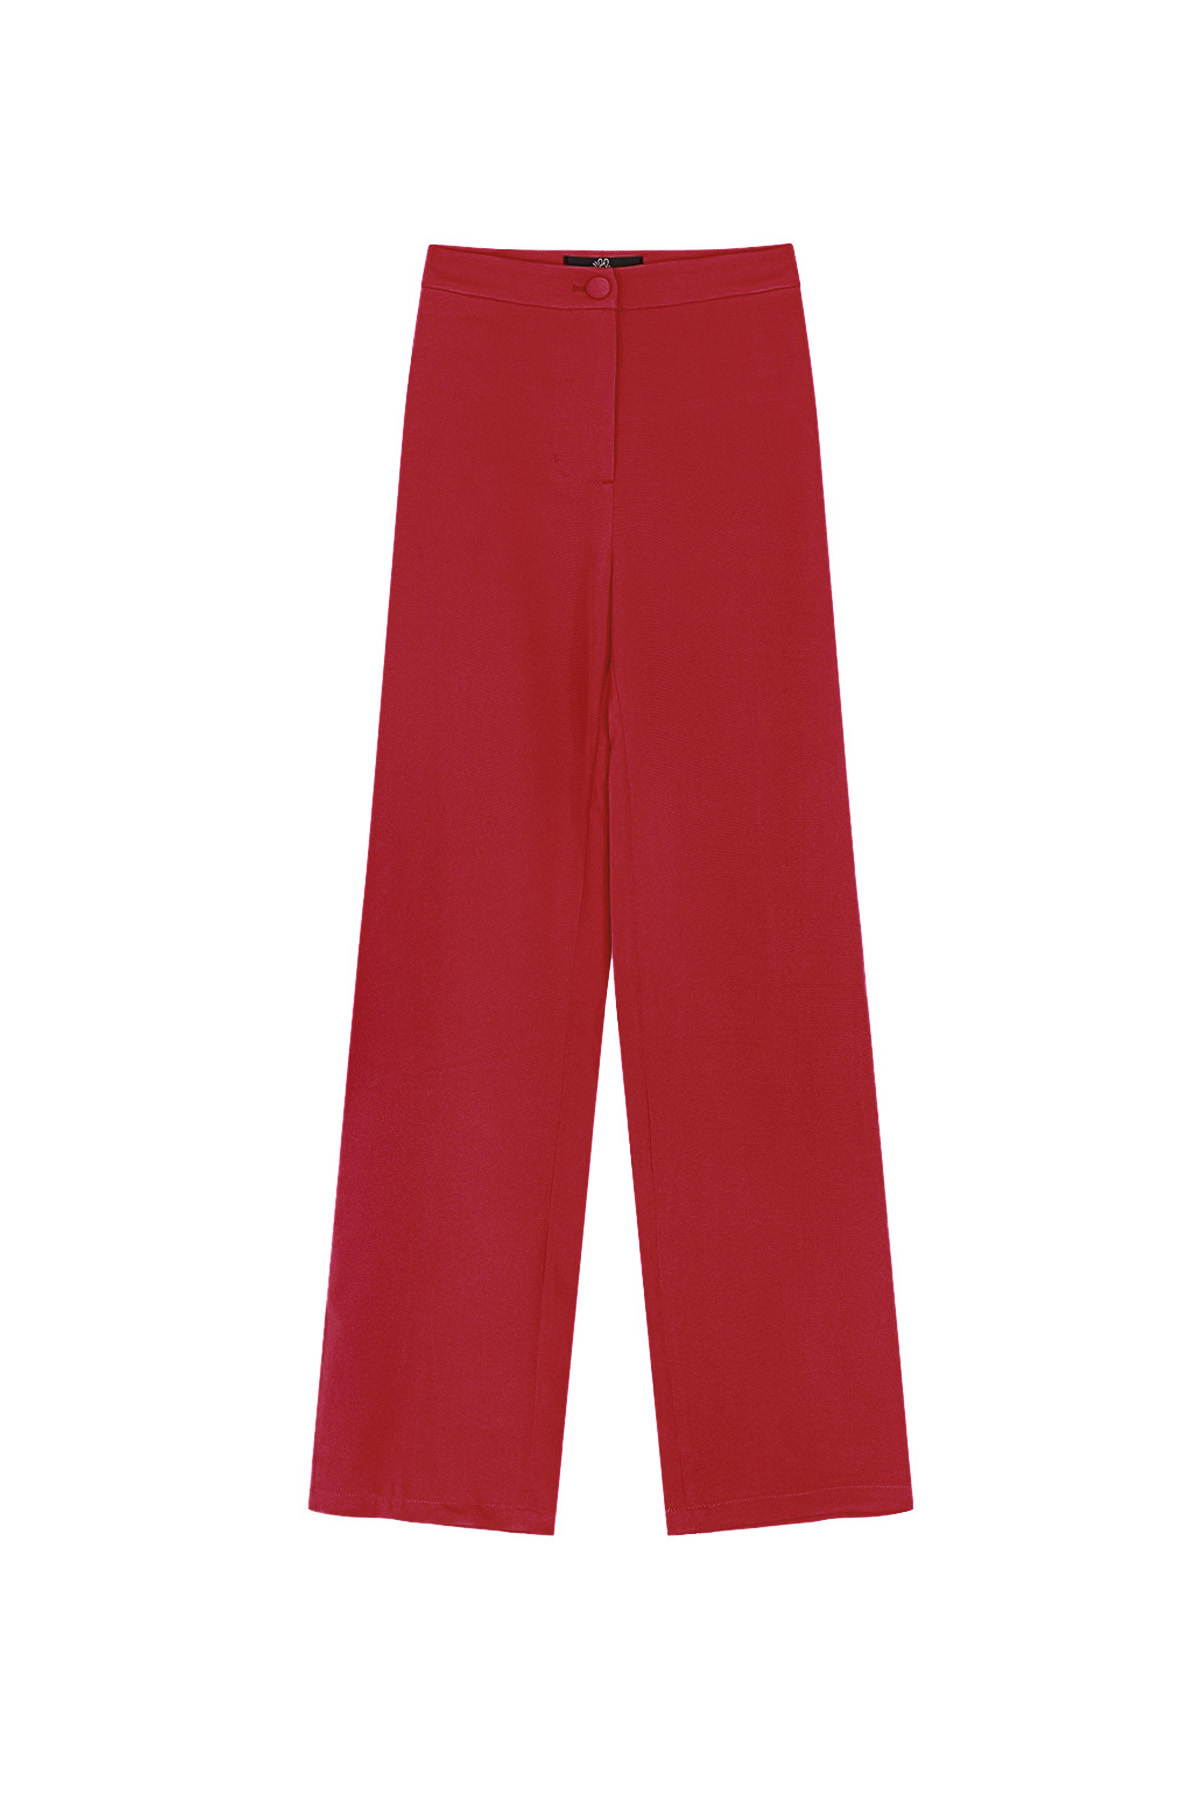 Einfache schlichte Hose – rot